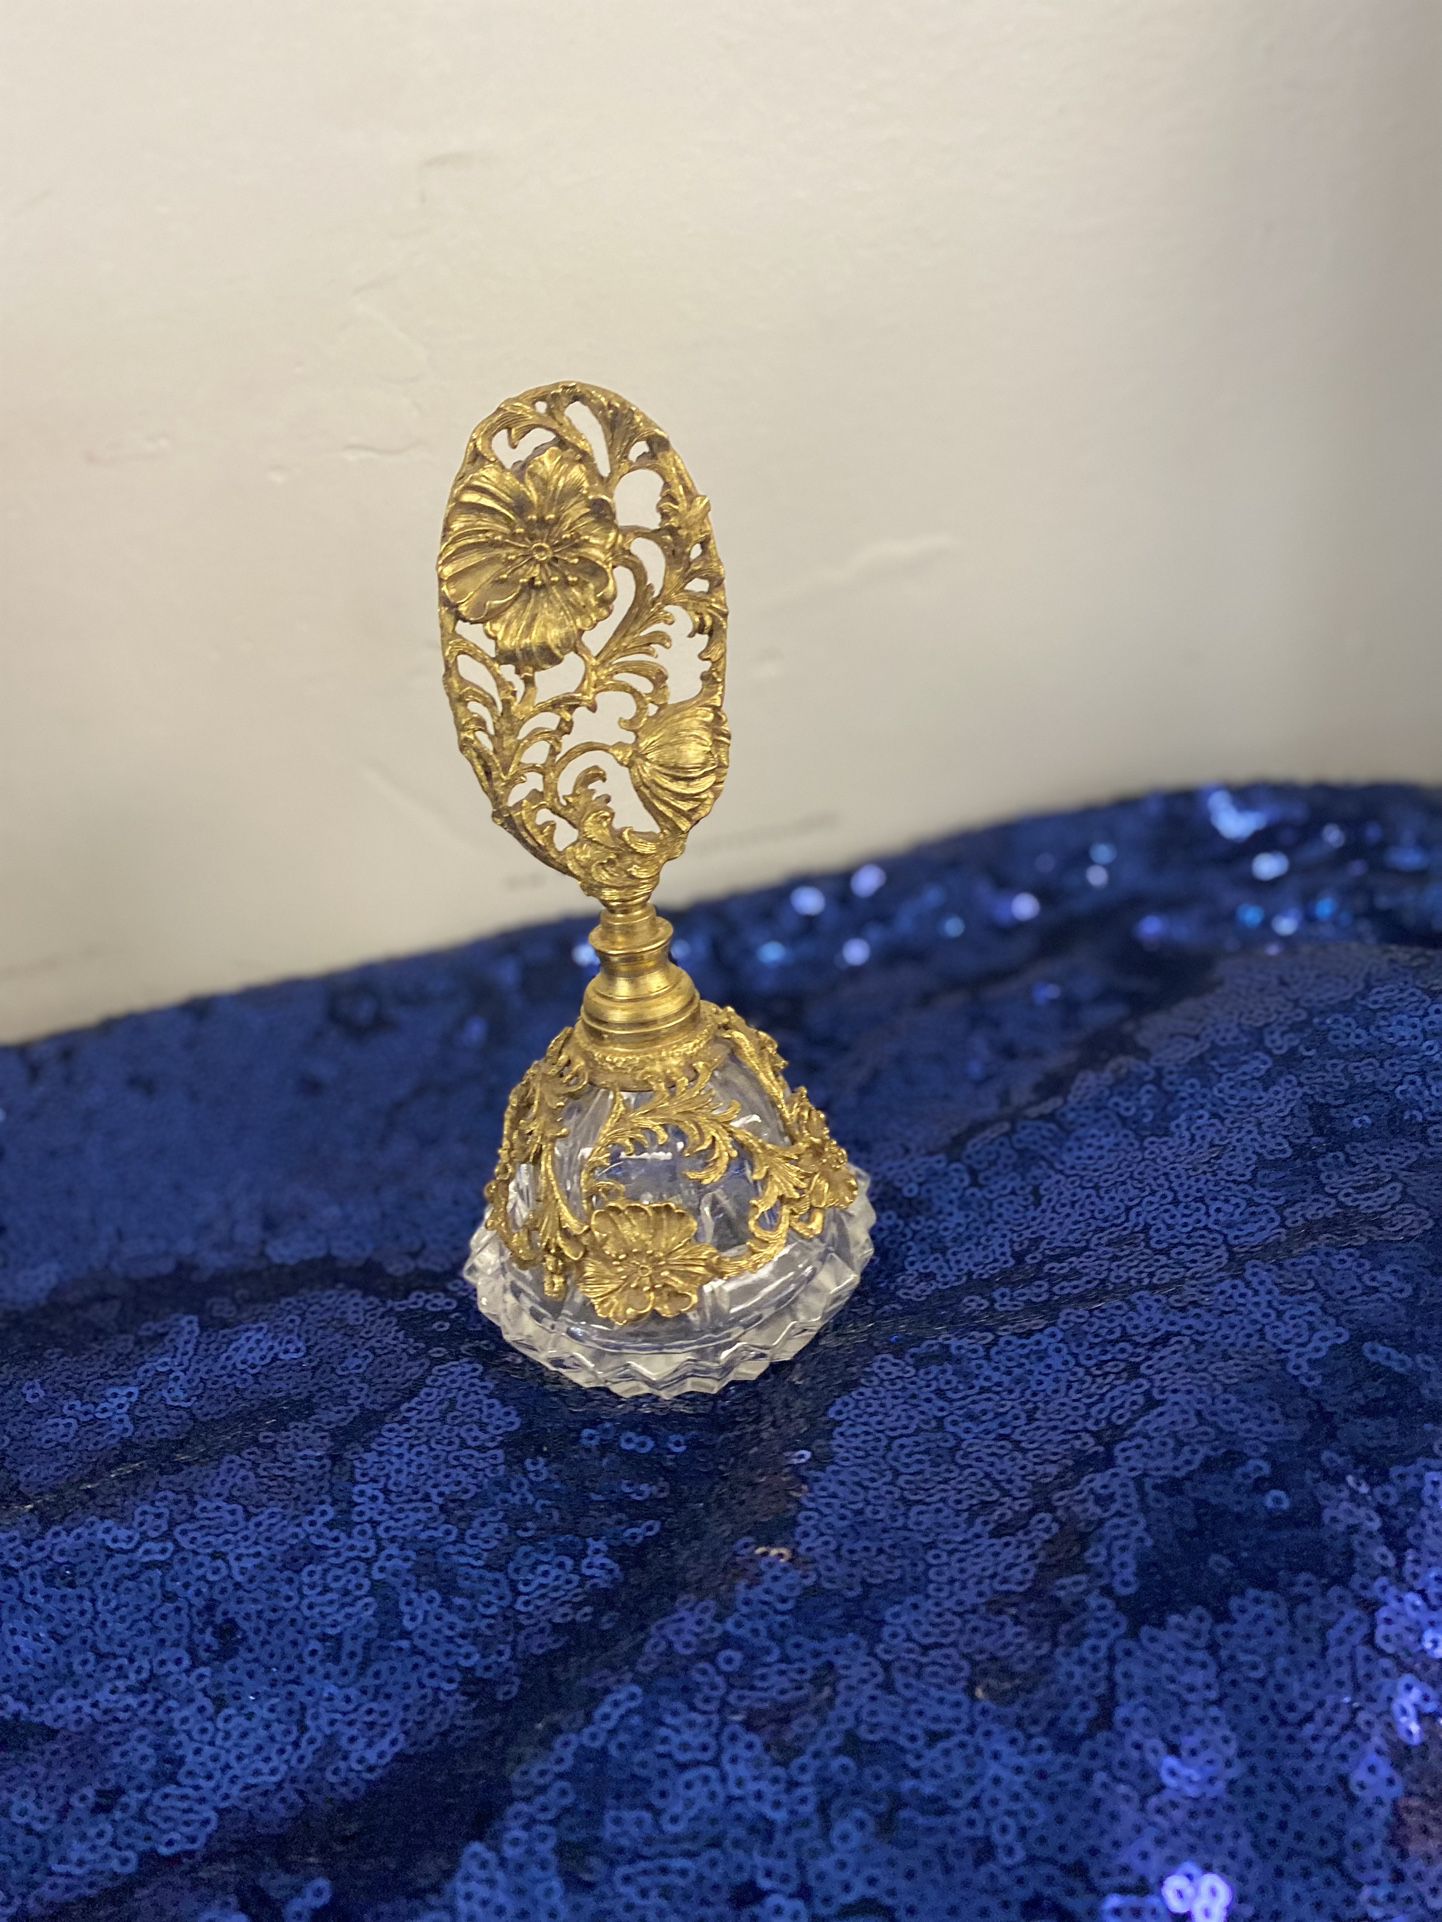 Vintage Ormolu Pedestal Perfume Bottle w/ Dauber in Gold Ornate Filigree $39.99 